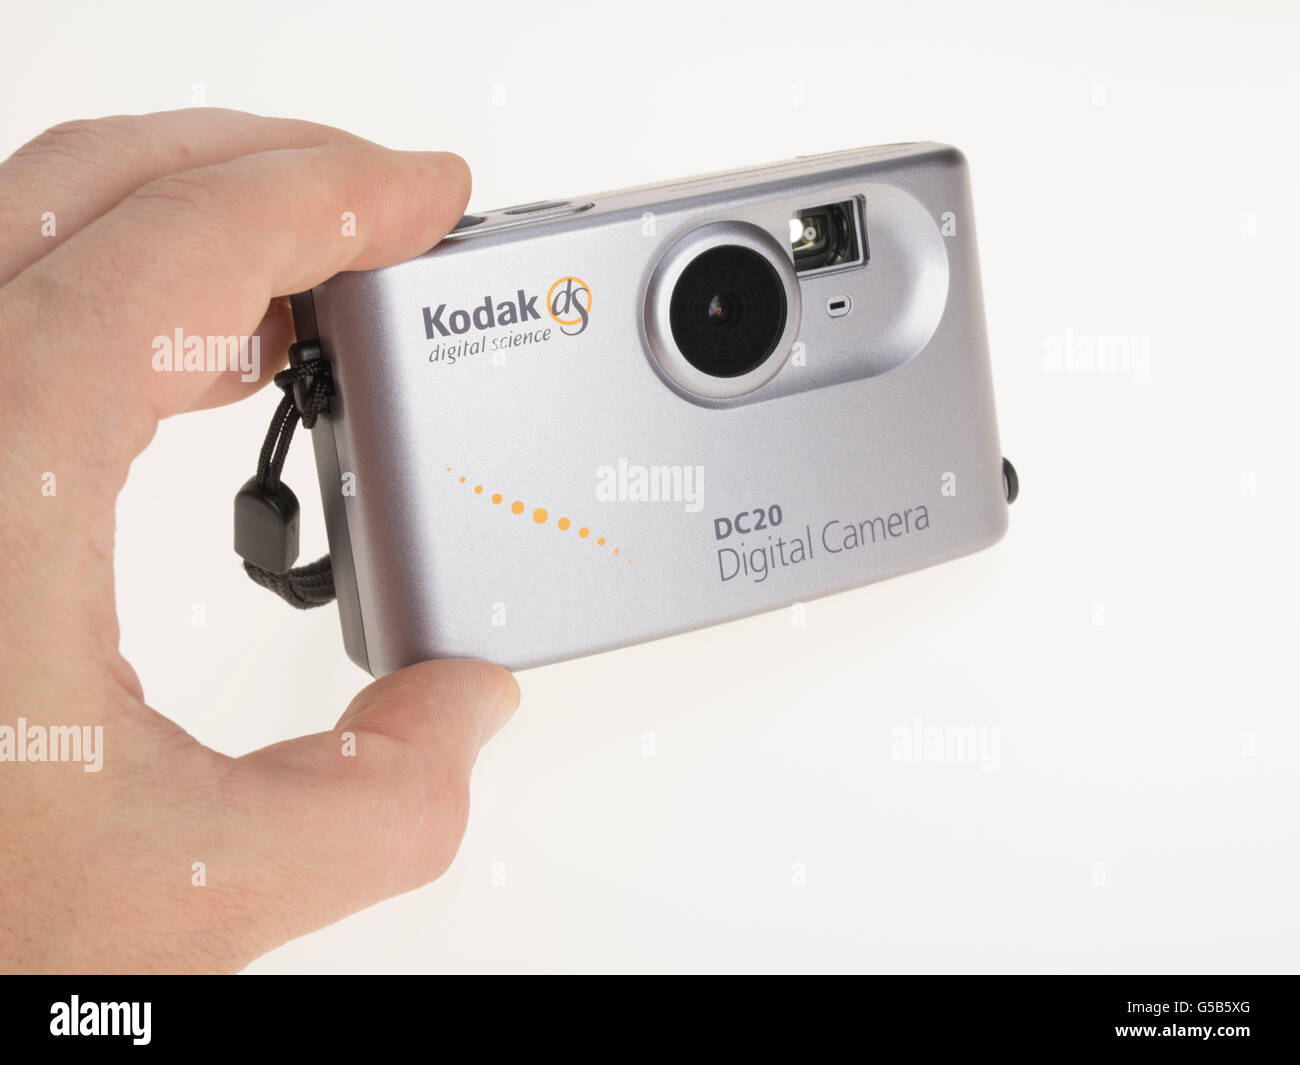 Kodak dS digitale Wissenschaft DC20 Digitalkamera von Kodak im Jahr 1996 erschien Stockfoto